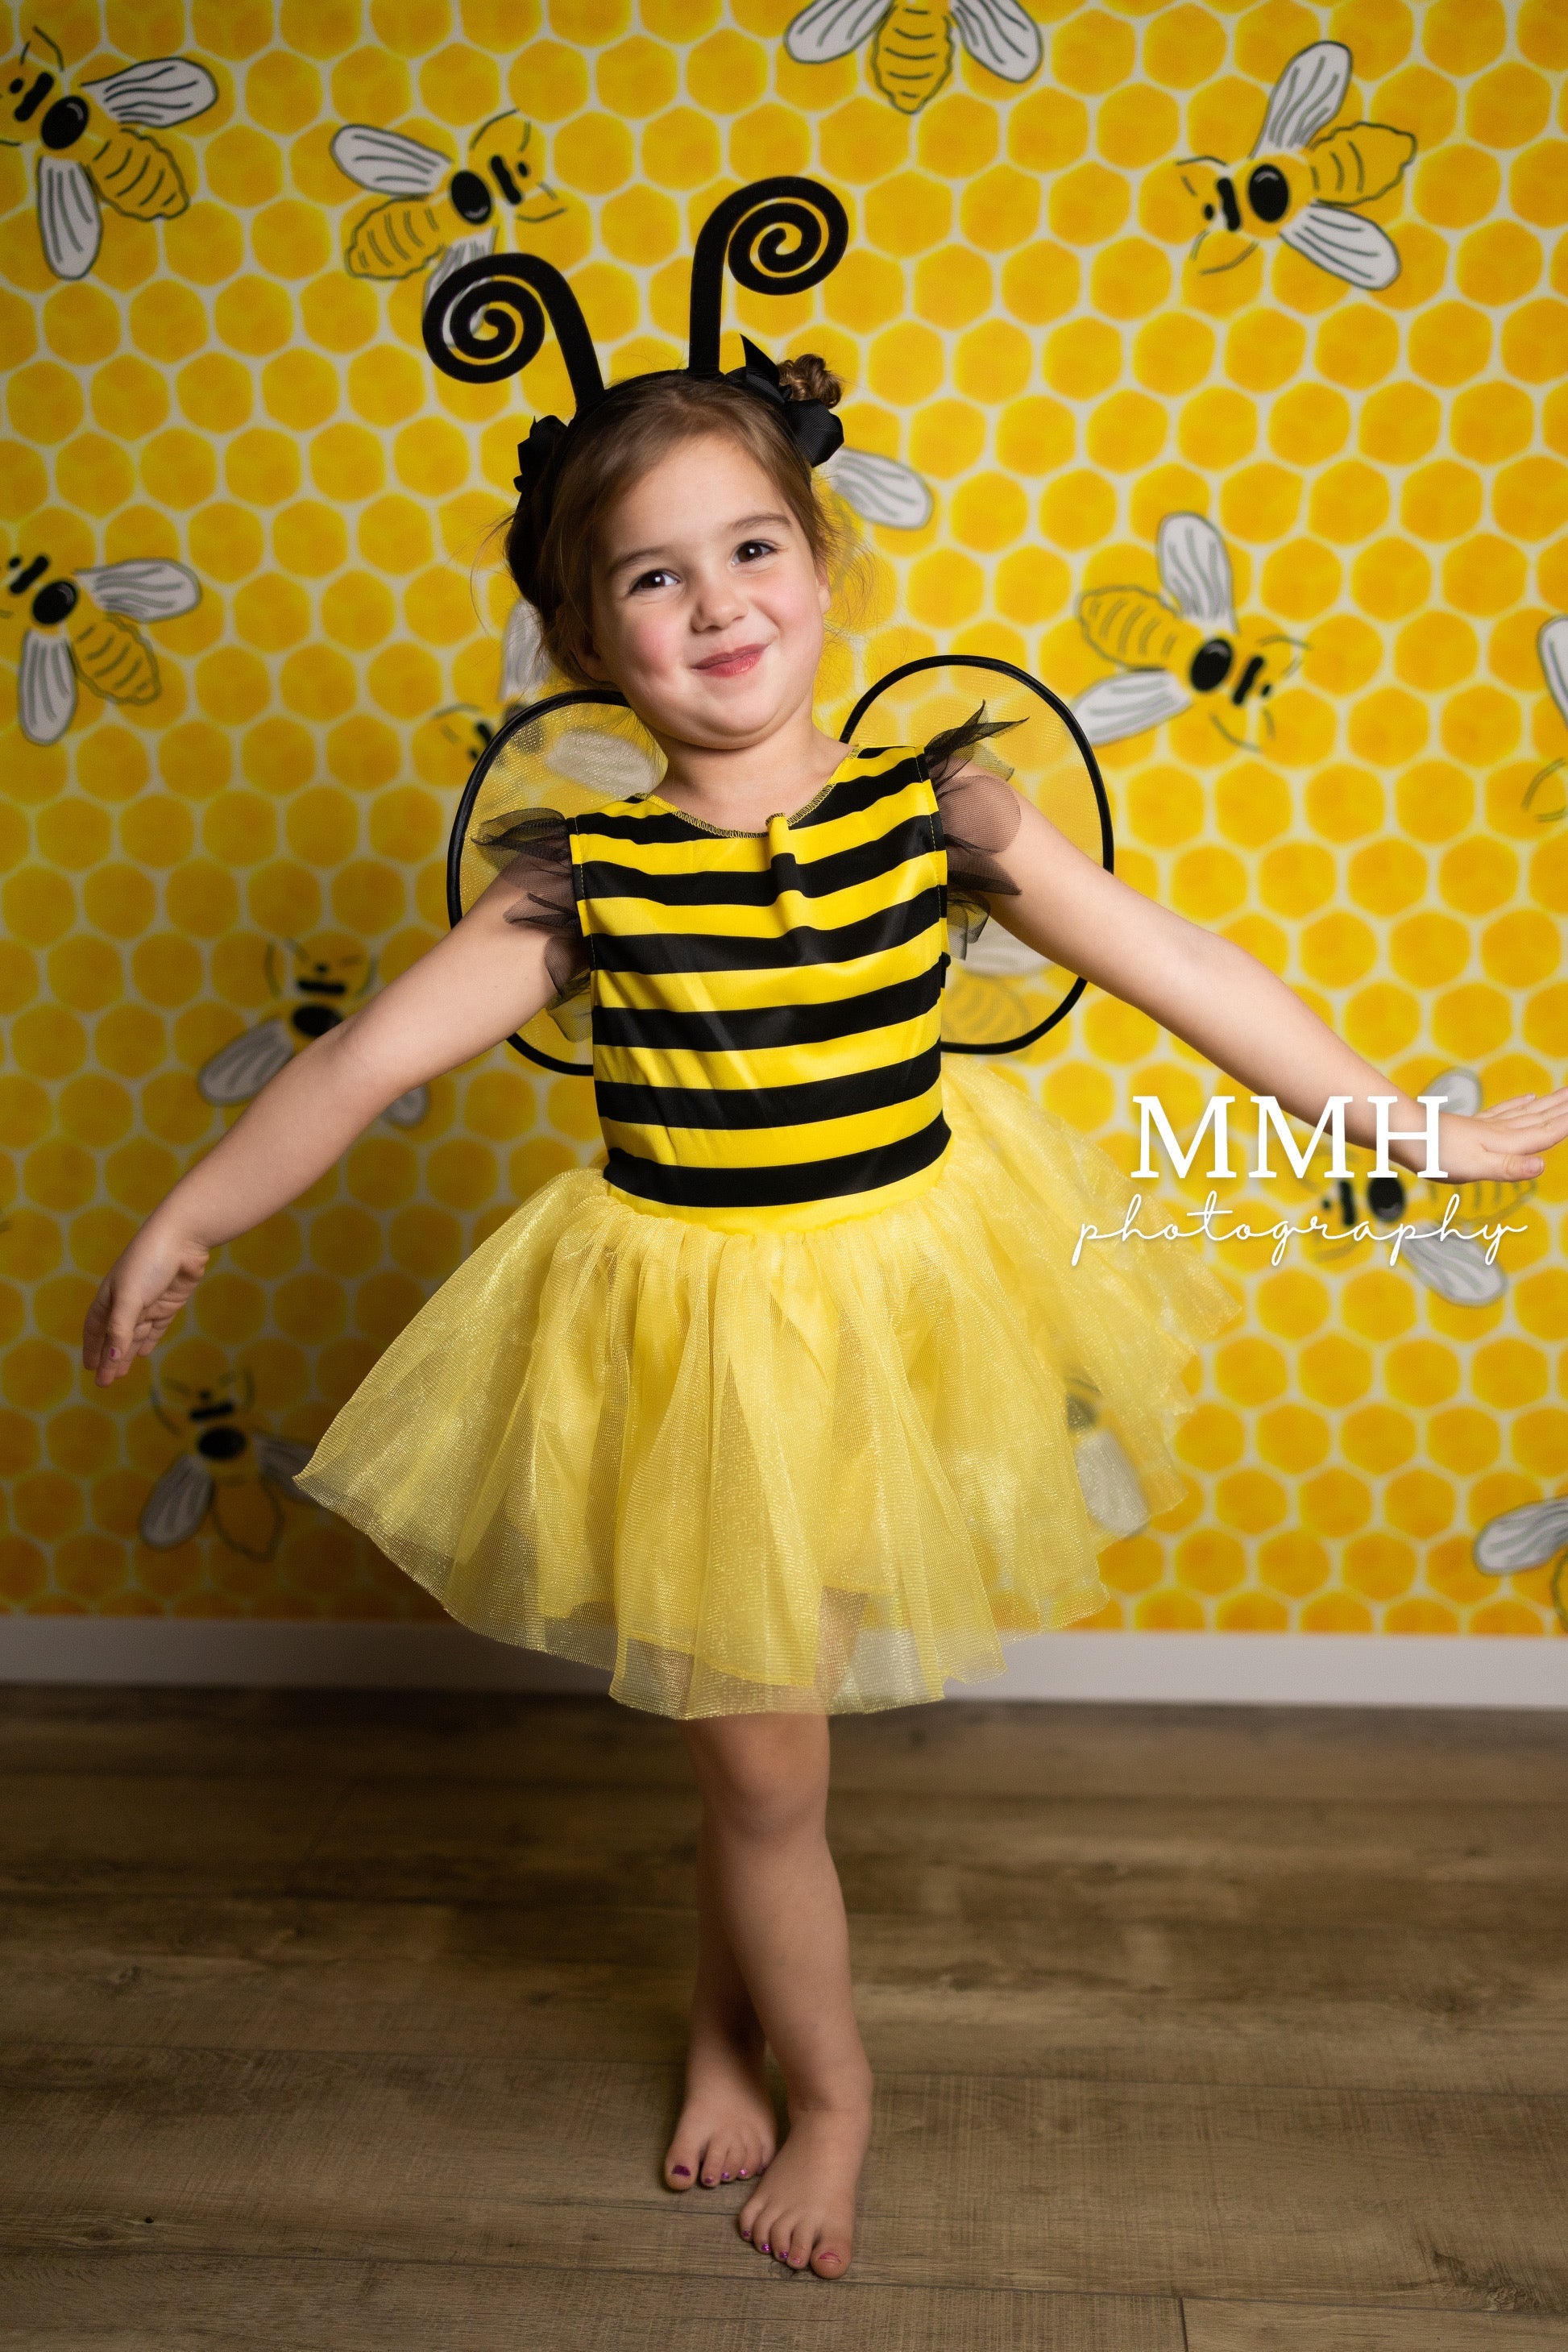 Super Sale-A Kate BEE-Day- Gelber Hintergrund mit Bienenmuster von Melissa McCraw-Hummer